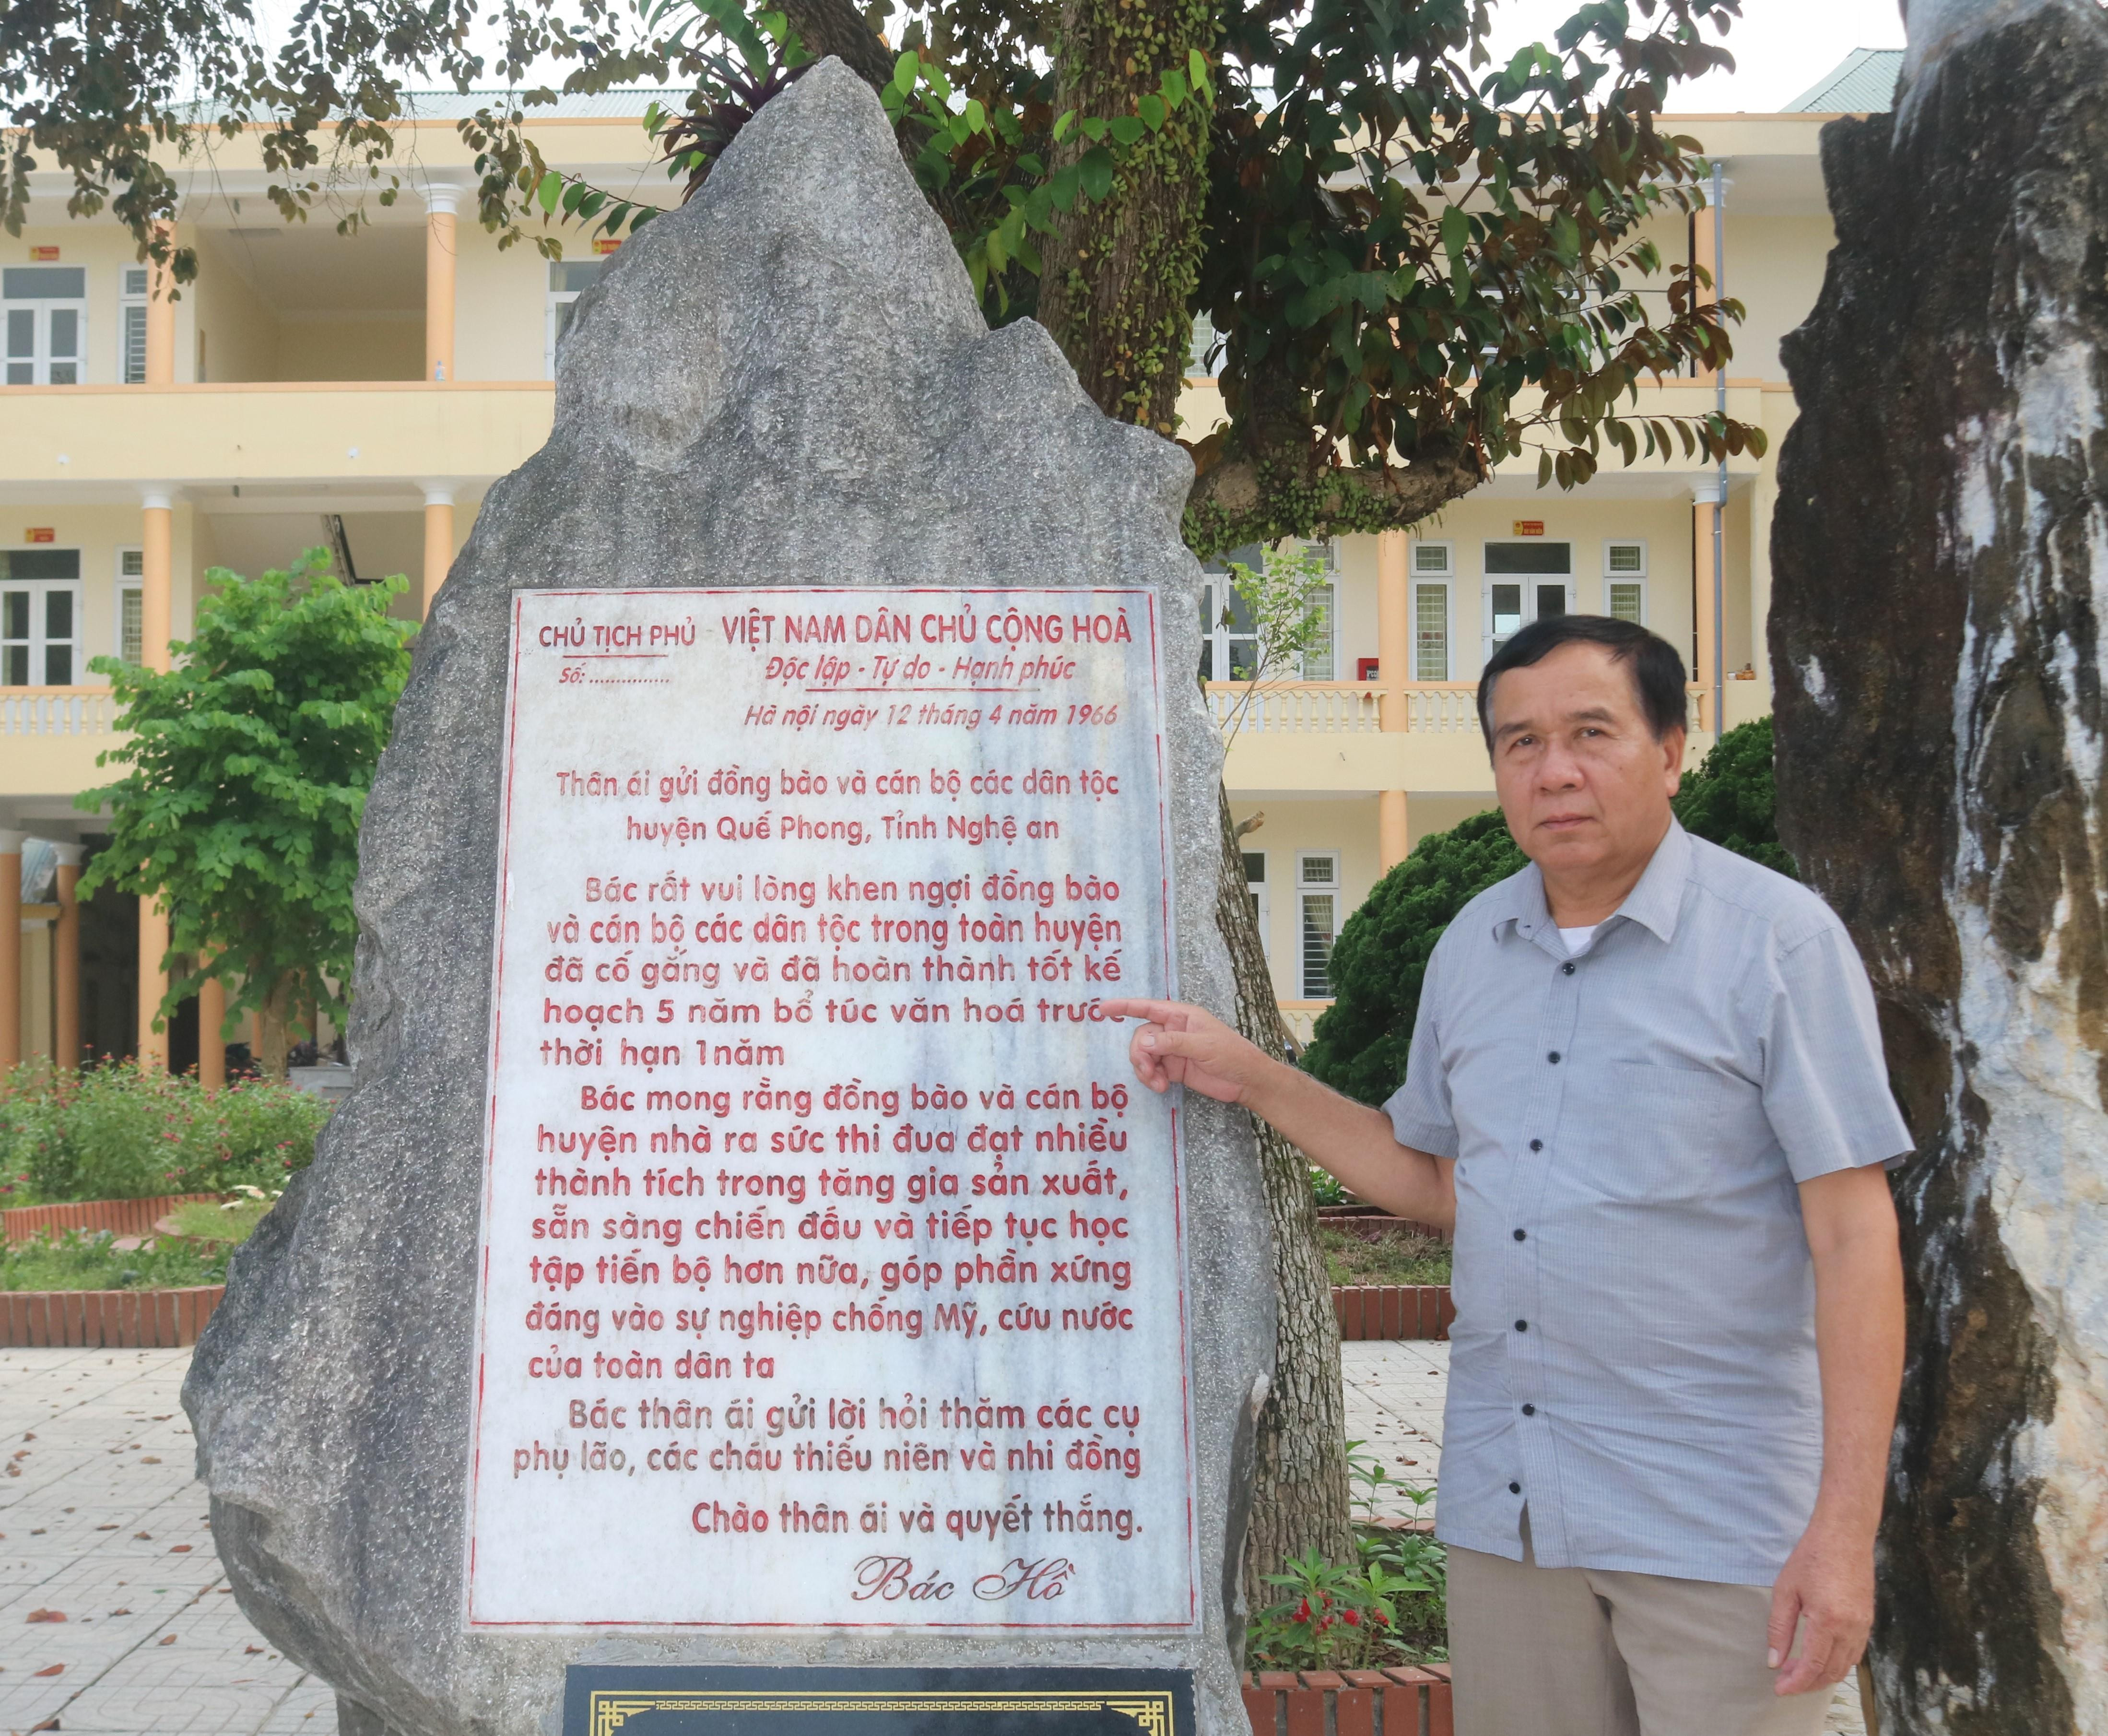 Tấm bia tạc lại bức thư của Bác Hồ gửi đồng bào Quế Phong được đặt trong khuôn viên UBND huyện. Ảnh: Diệp Phương